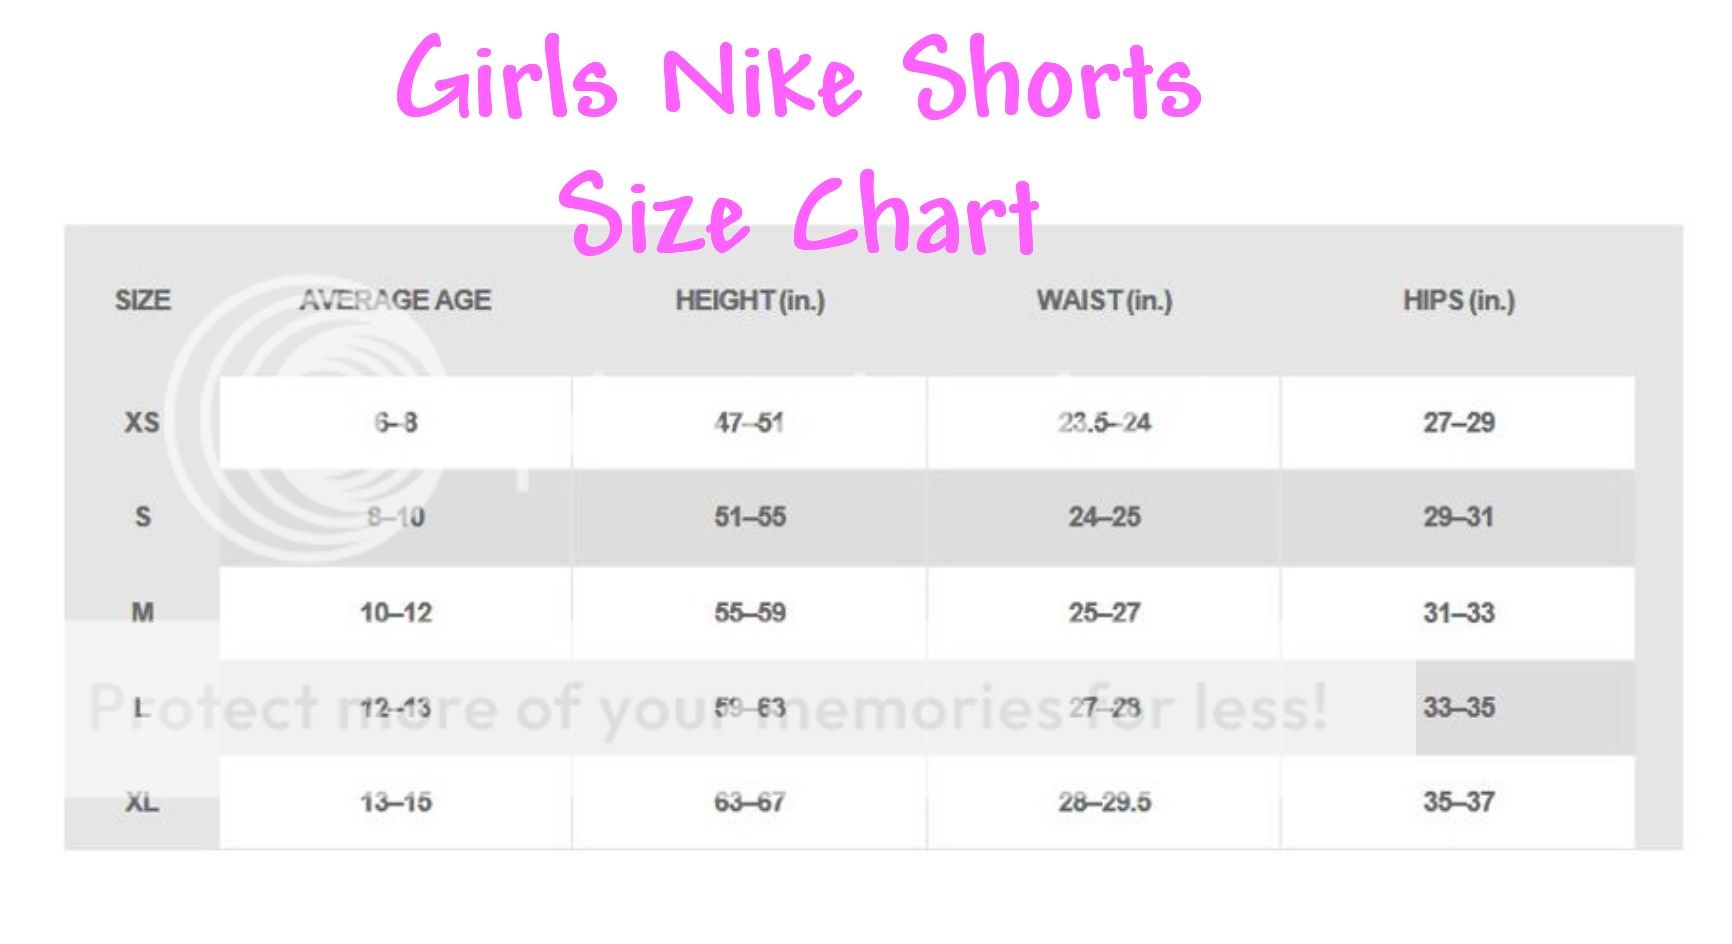 Youth Large Shorts Size Chart